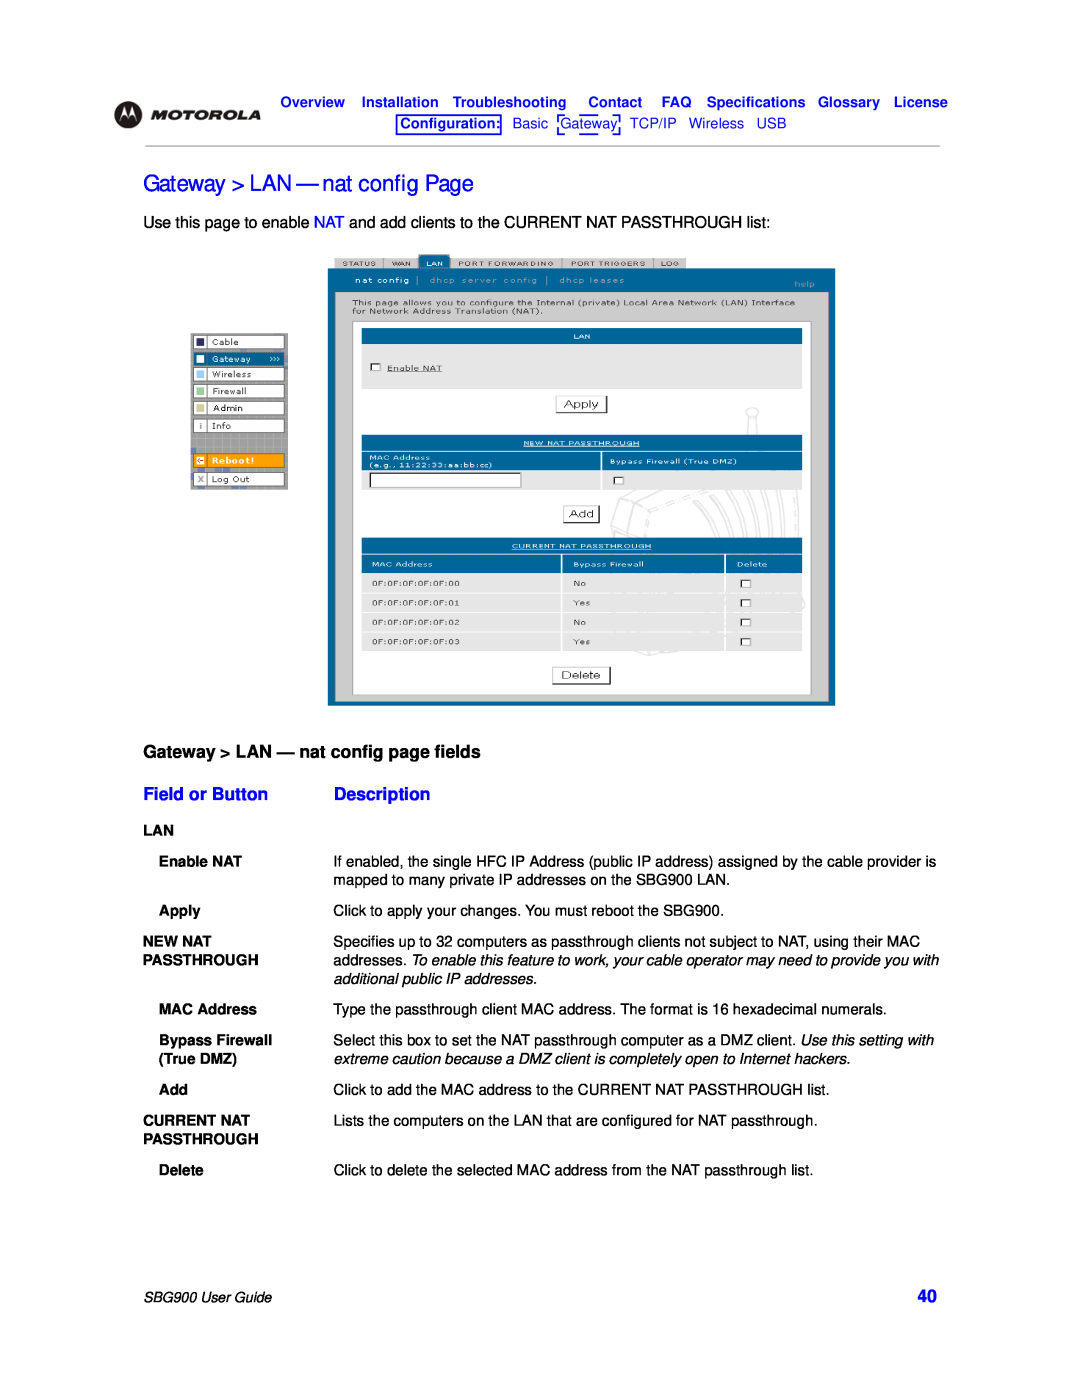 Motorola SBG900 manual Gateway LAN - nat config Page, Gateway LAN - nat config page fields, Field or Button, Description 